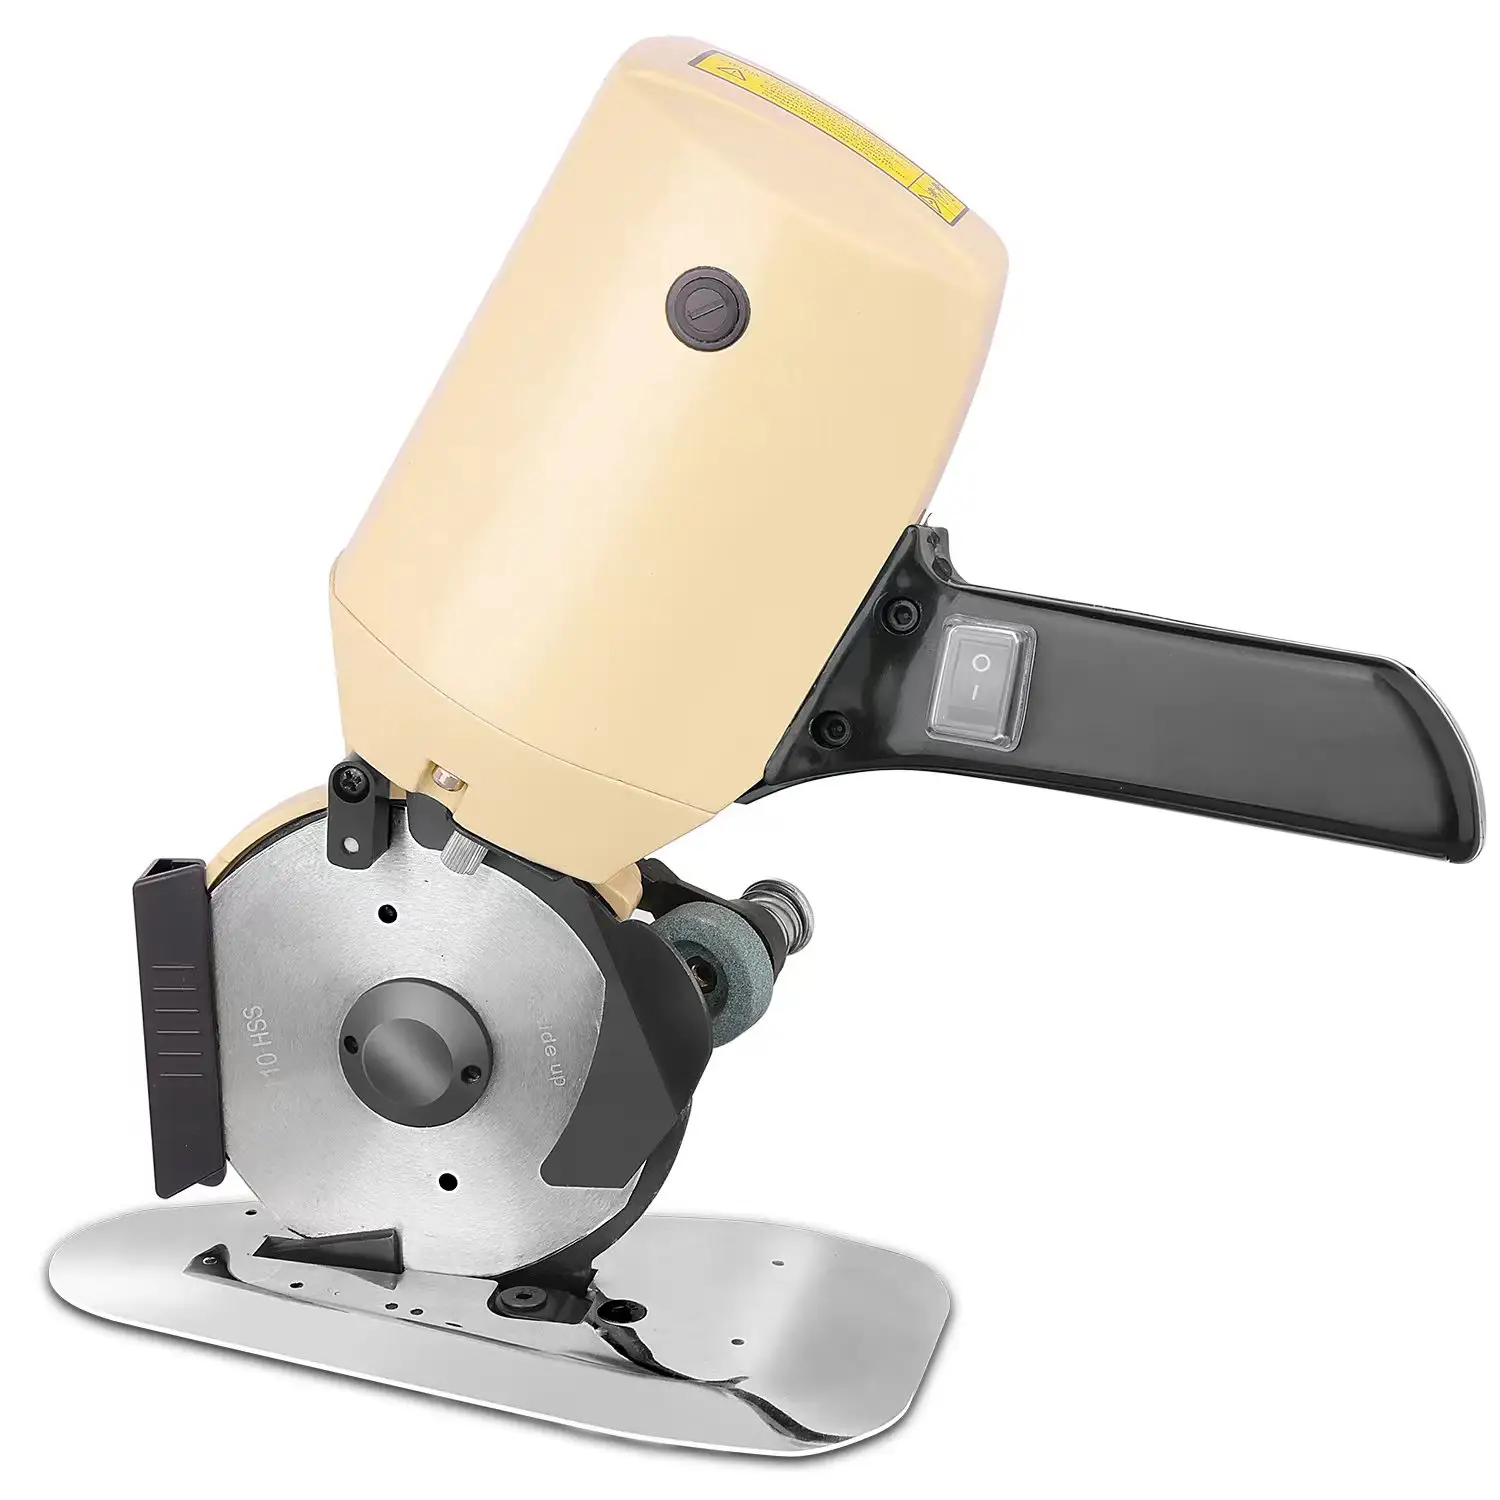 DIY manuelle schneidemaschine für rundmesser kleidung für schneidereikleidung schwerlast kleidung schneidemaschine für wollstoff schneider